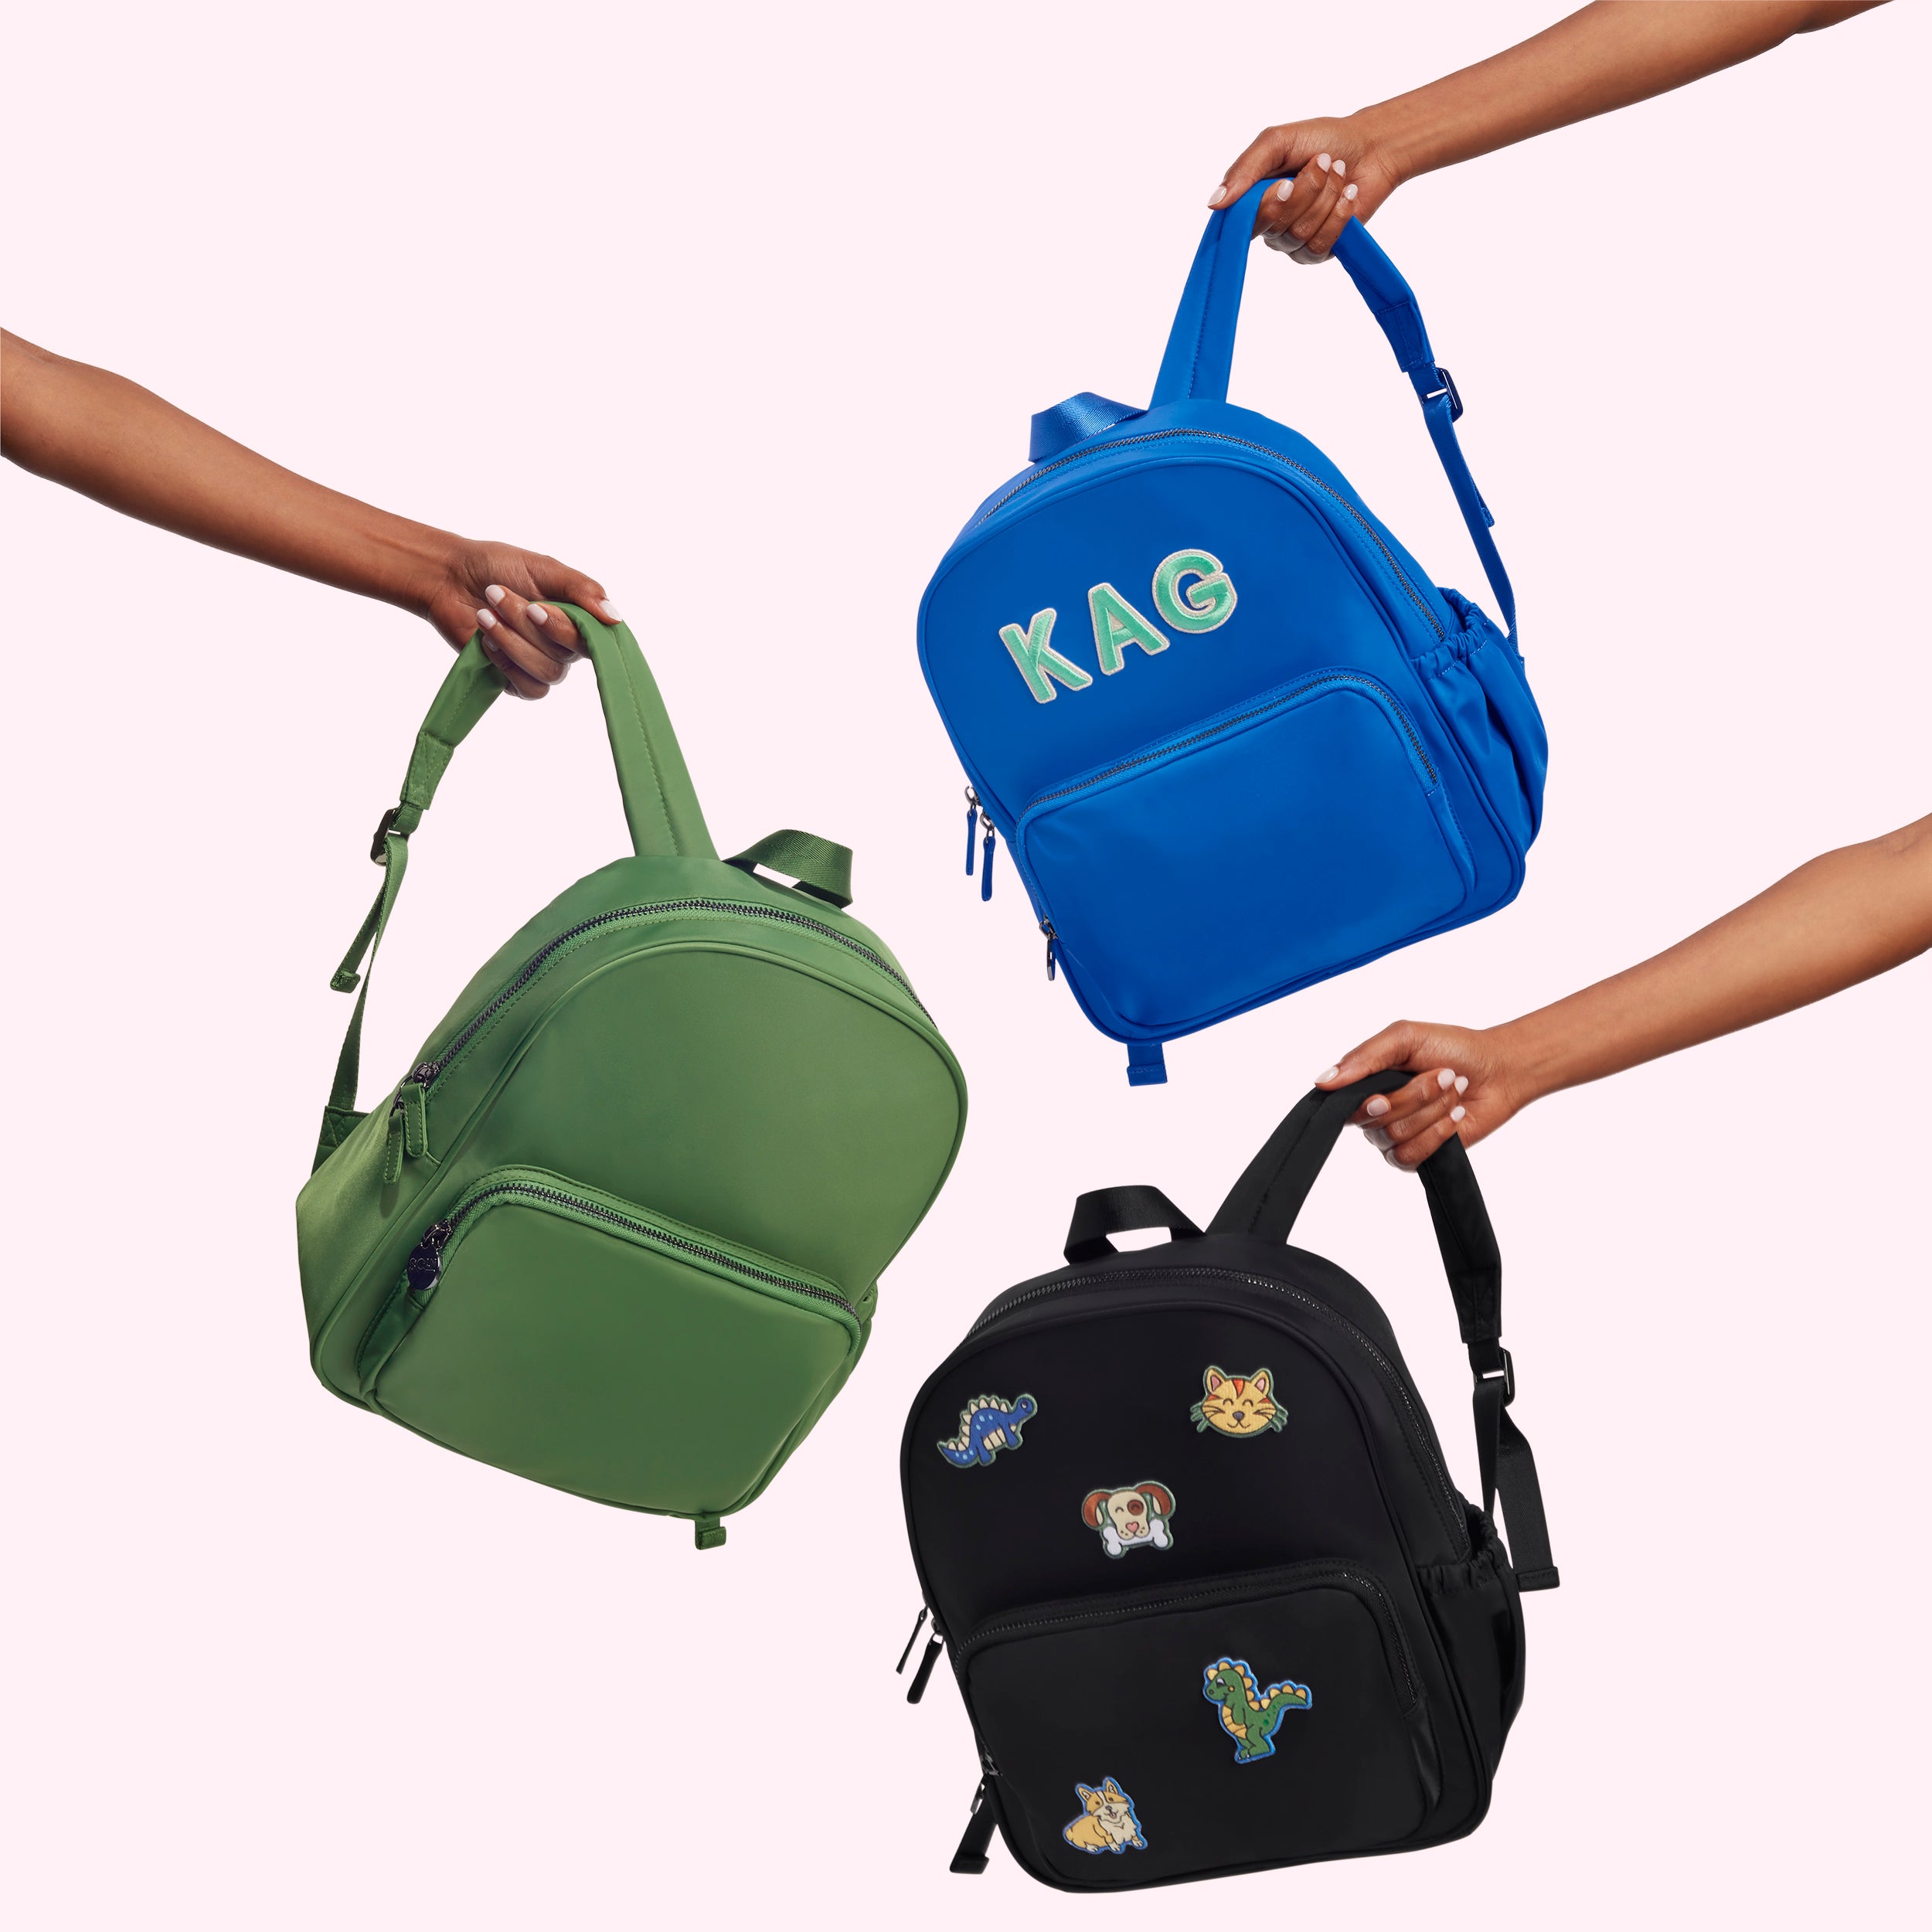 mini backpack bag